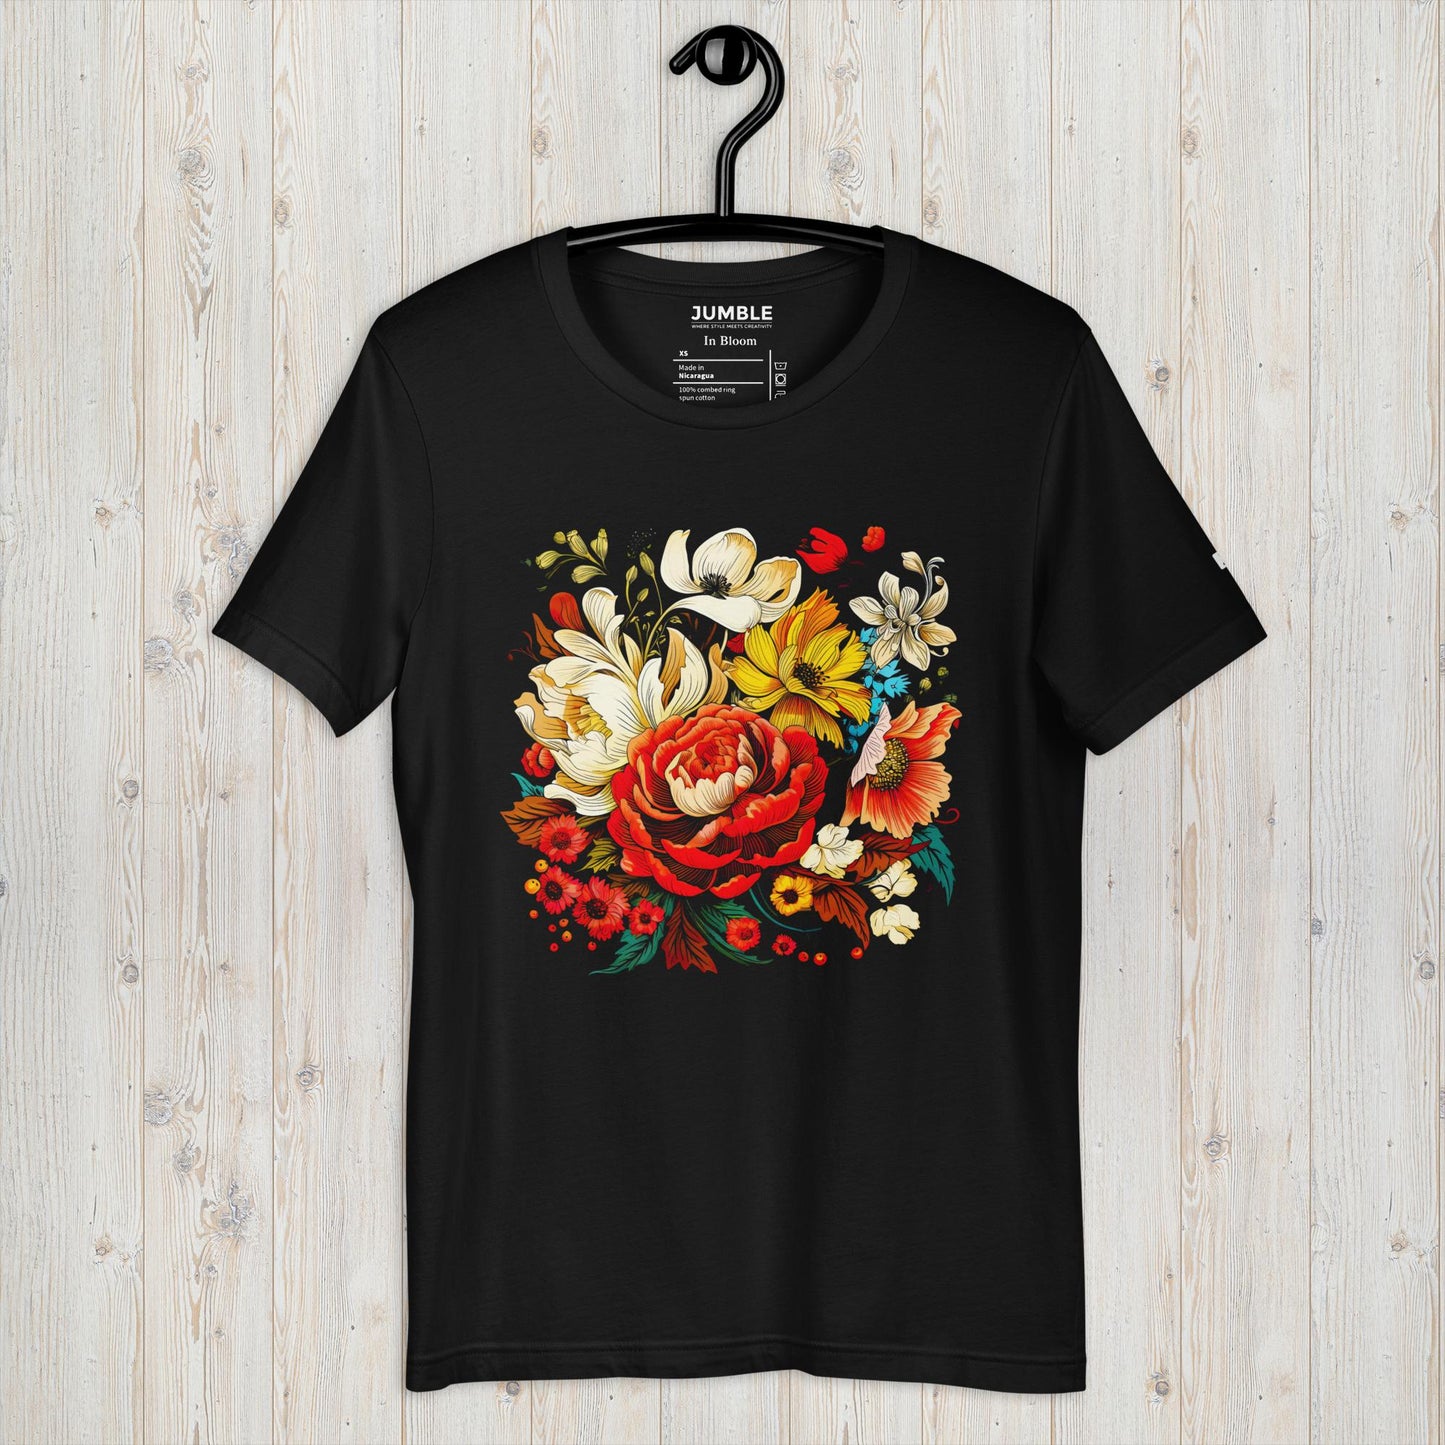 In Bloom Unisex T-Shirt - Black Color - On Hanger